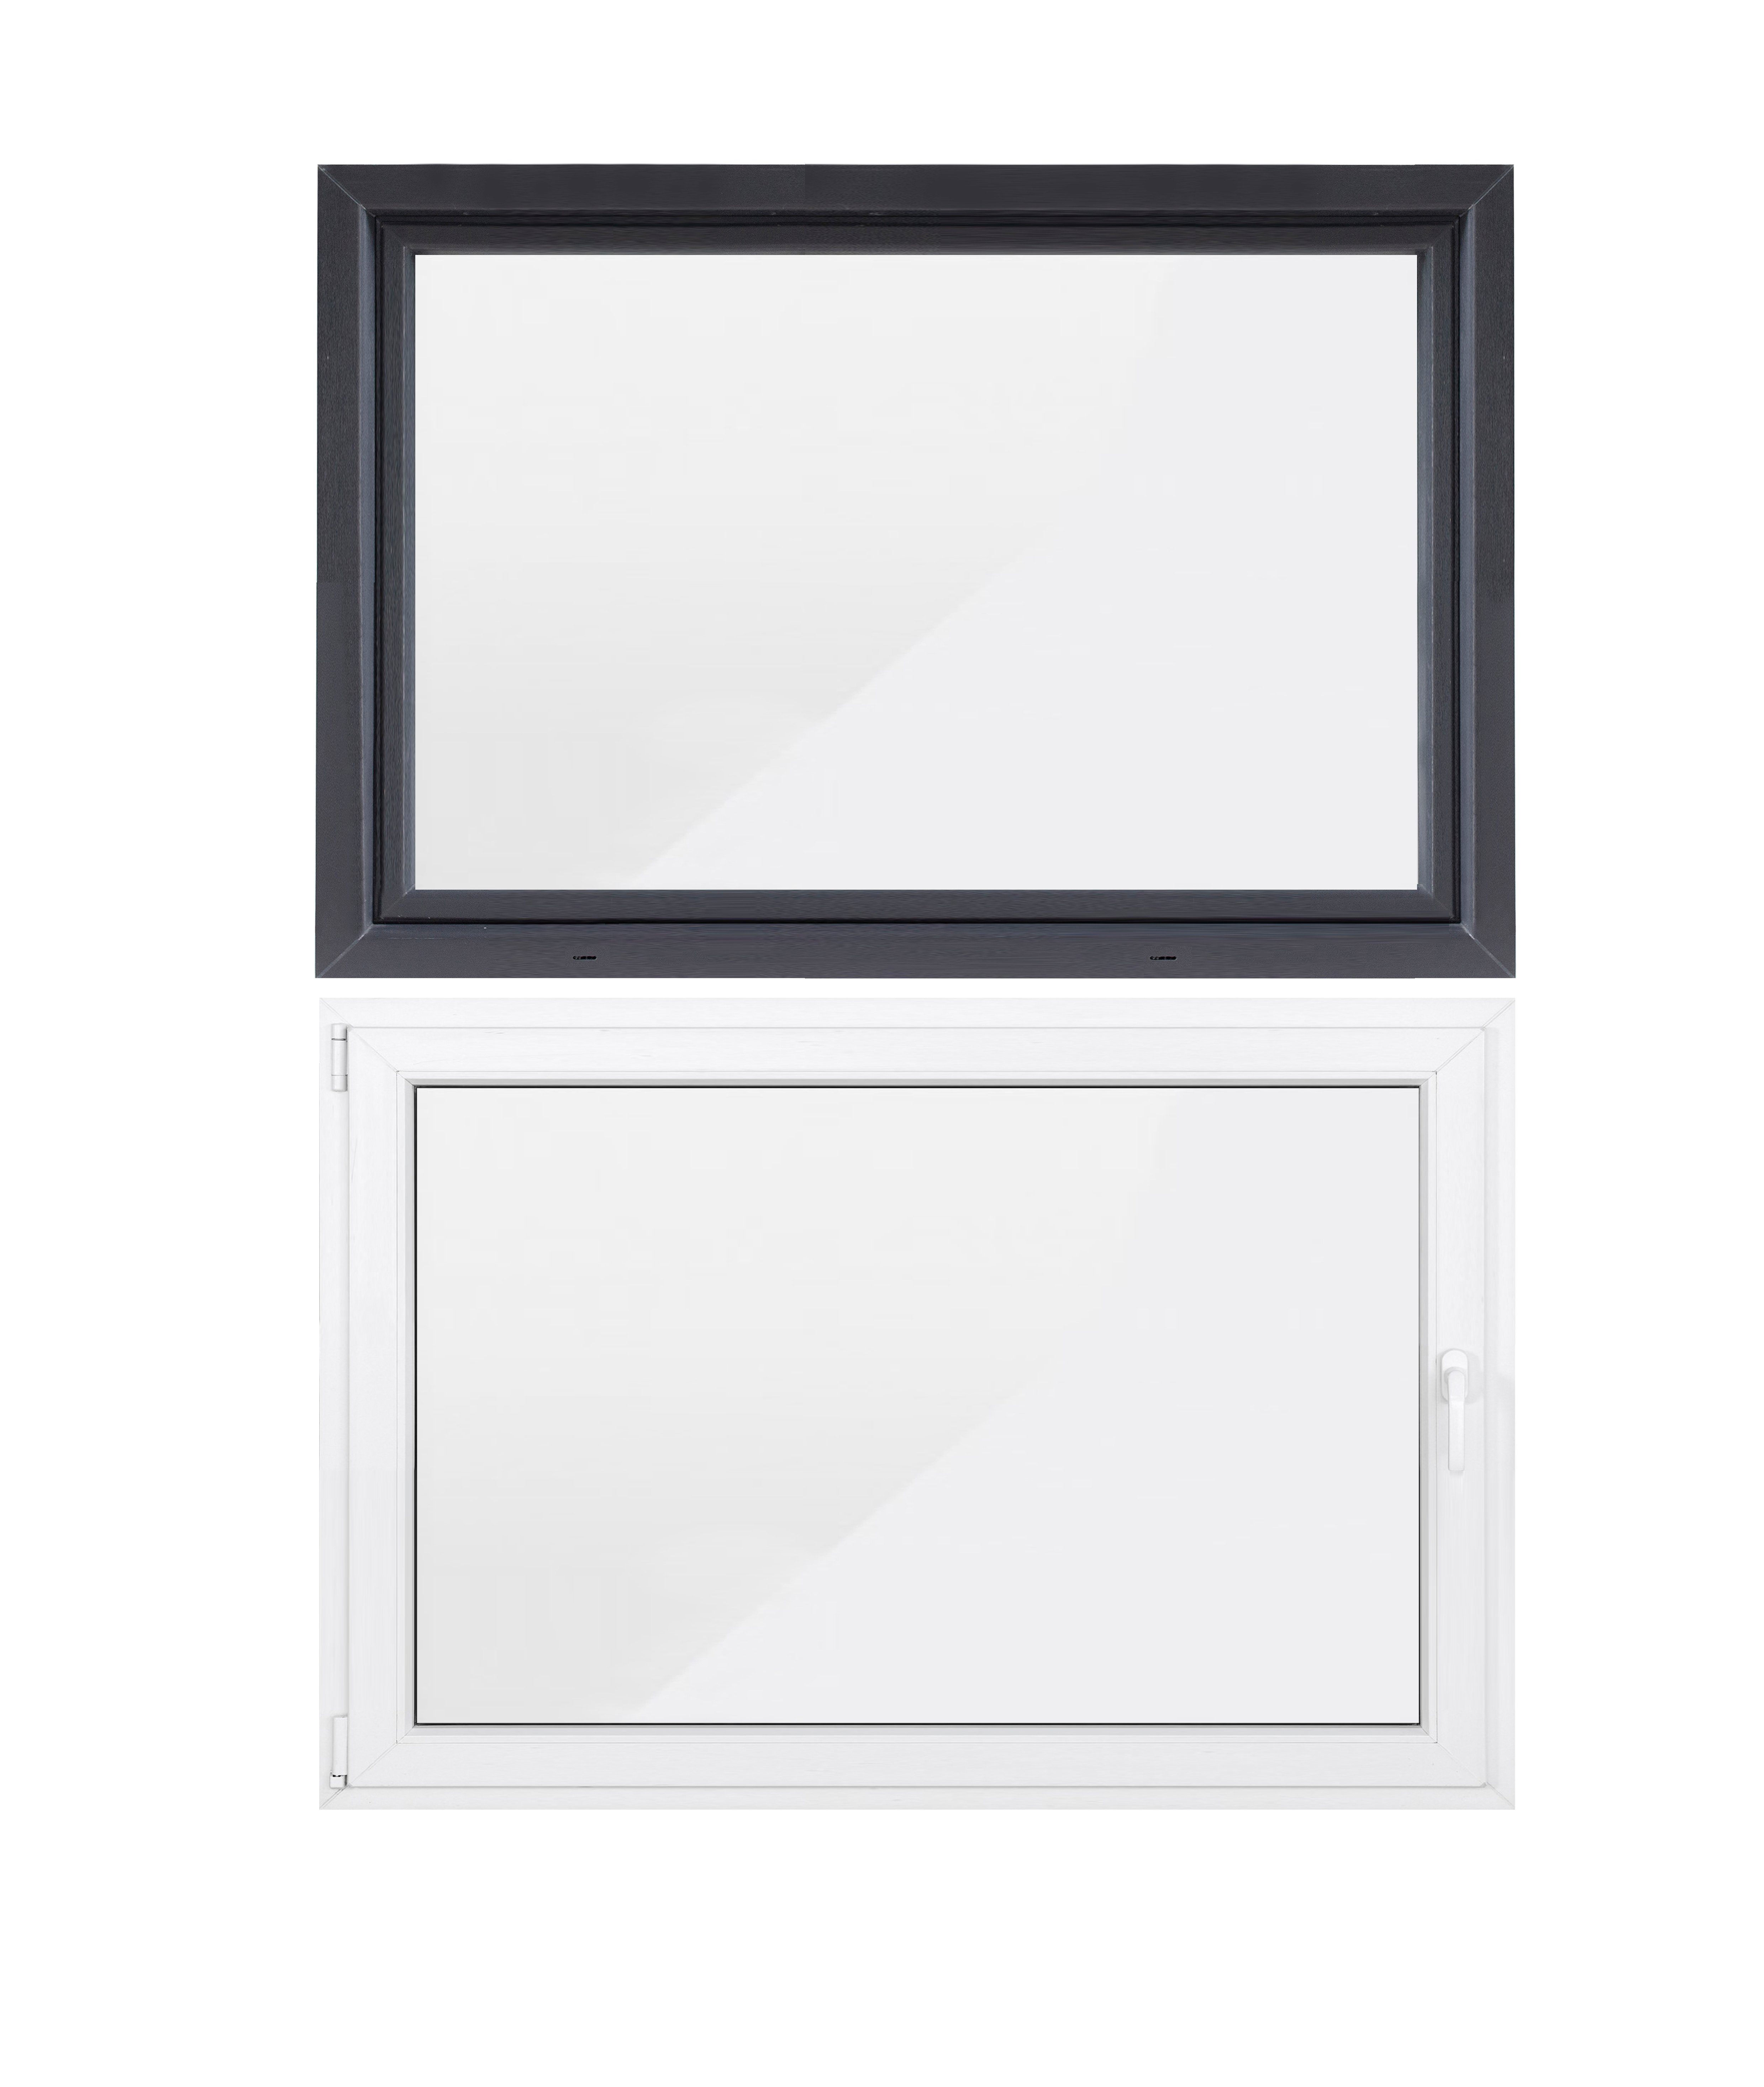 SN Deco Kellerfenster »Kellerfenster, 1 Flügel, 800x400, 2-fach Verglasung,  außen anthrazit/innen weiß, 70 mm Profil«, RC2 Sicherheitsbeschlag